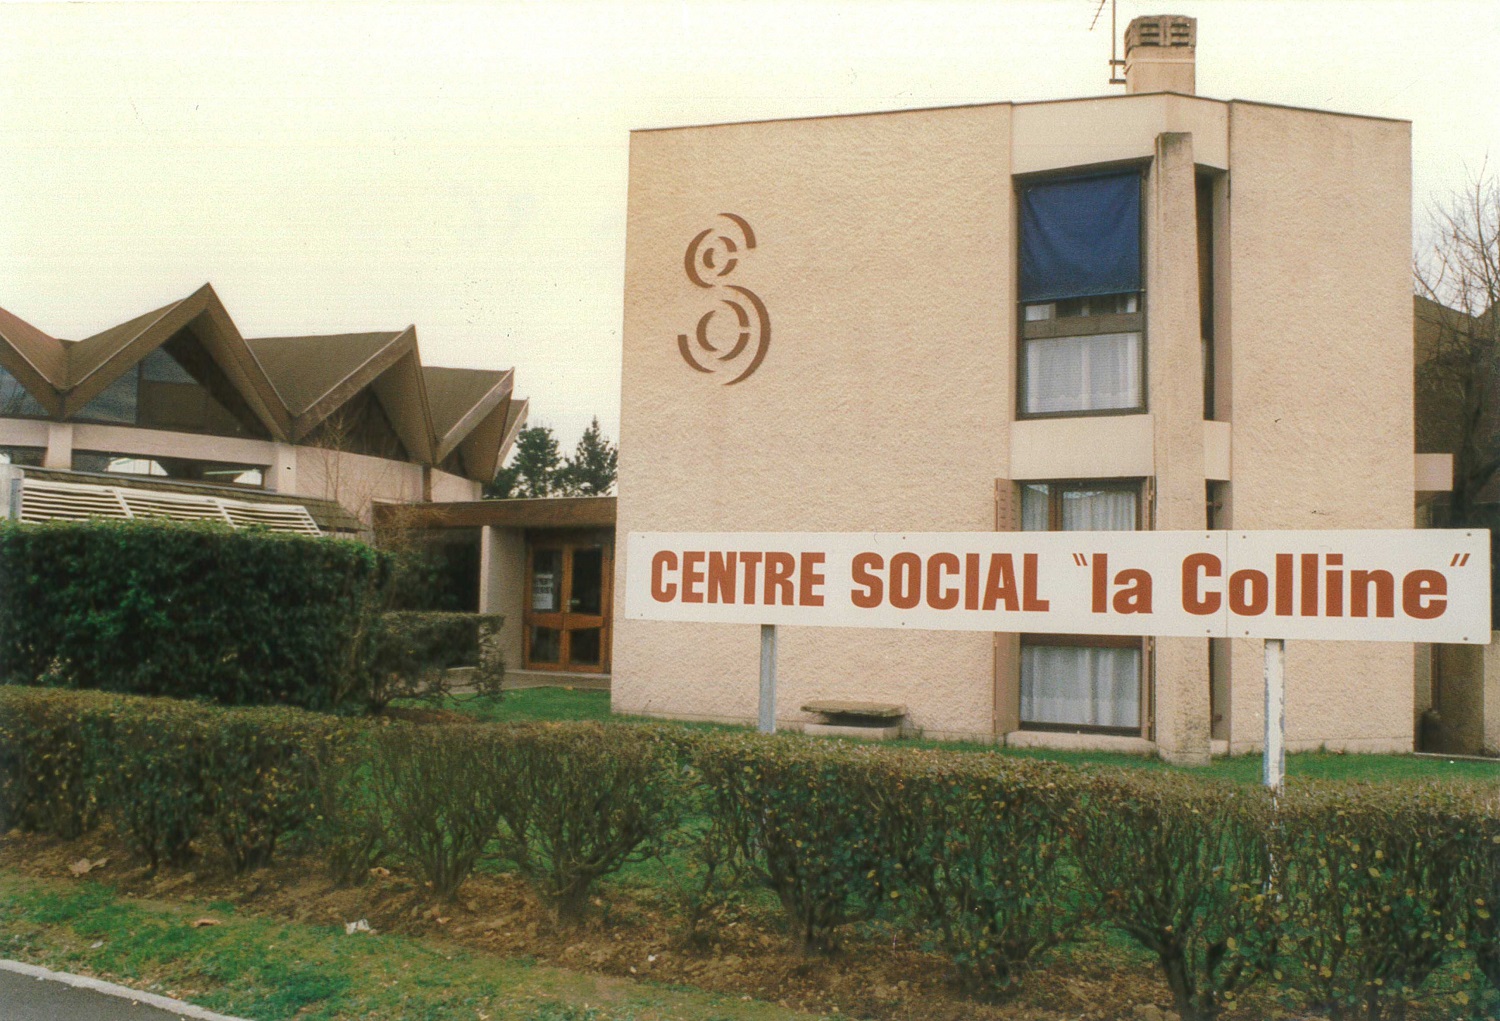 La colline et la bibliothèque municipale Marcel Pagnol en 1996